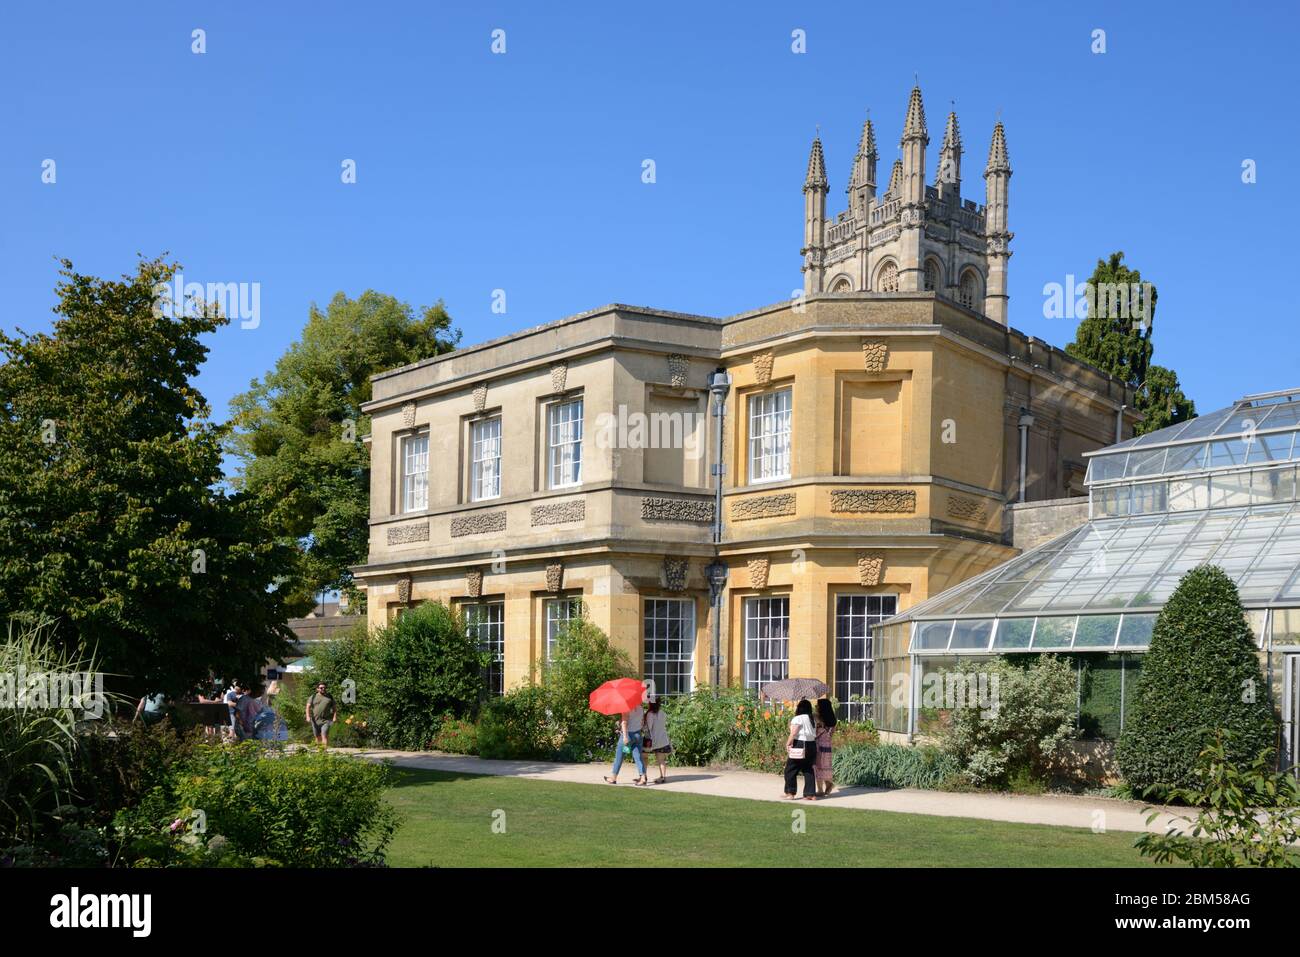 Turisti che visitano il Giardino Botanico dell'Università di Oxford o il Giardino Botanico, il più antico Giardino Botanico del Regno Unito, Oxford, Inghilterra Foto Stock